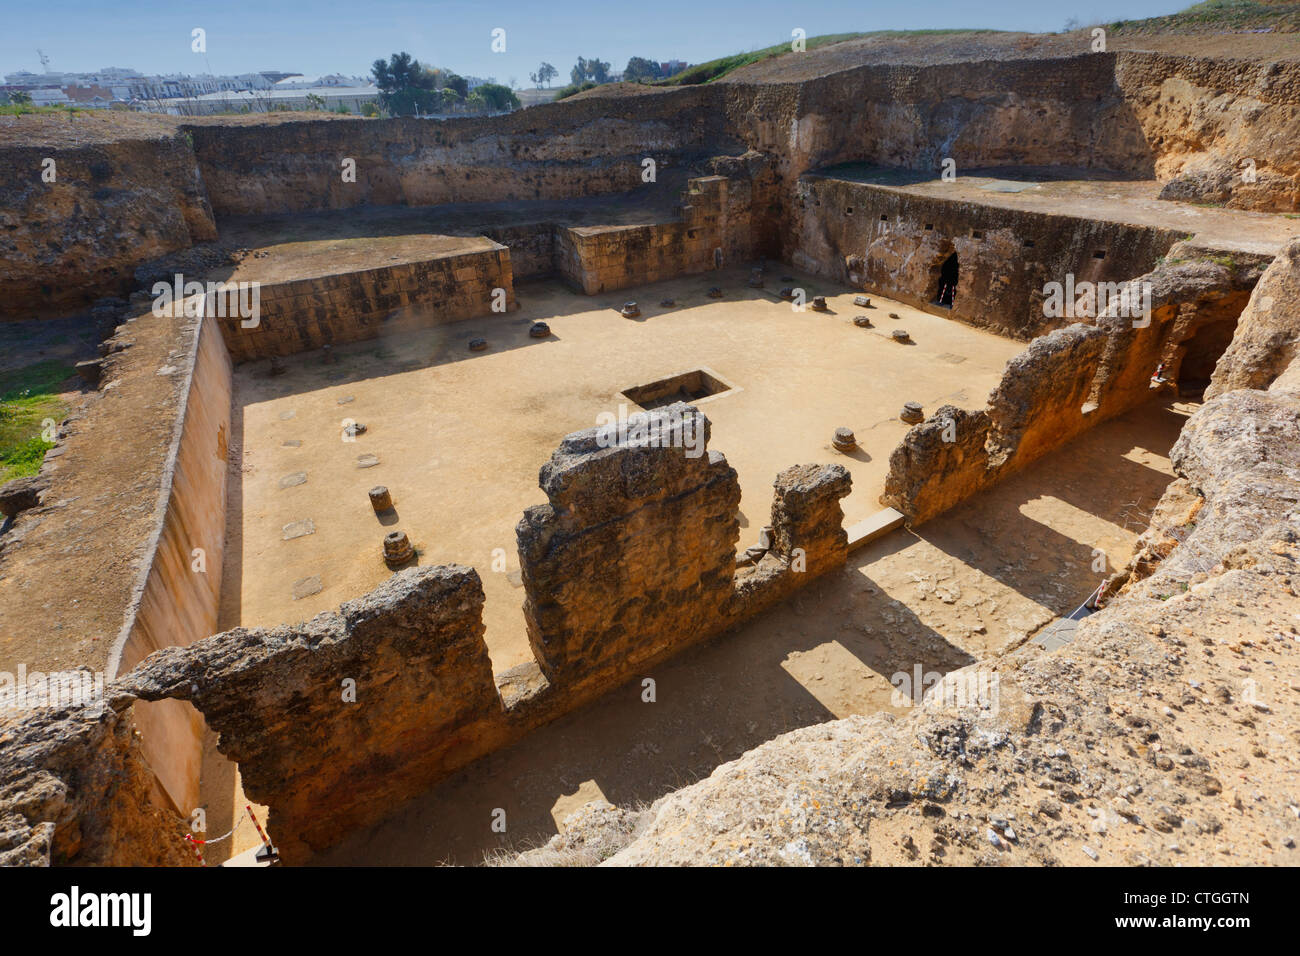 Le complexe archéologique, Carmona, Province de Séville, Espagne. Tumba de Servilia, le tombeau de Servilia. Banque D'Images